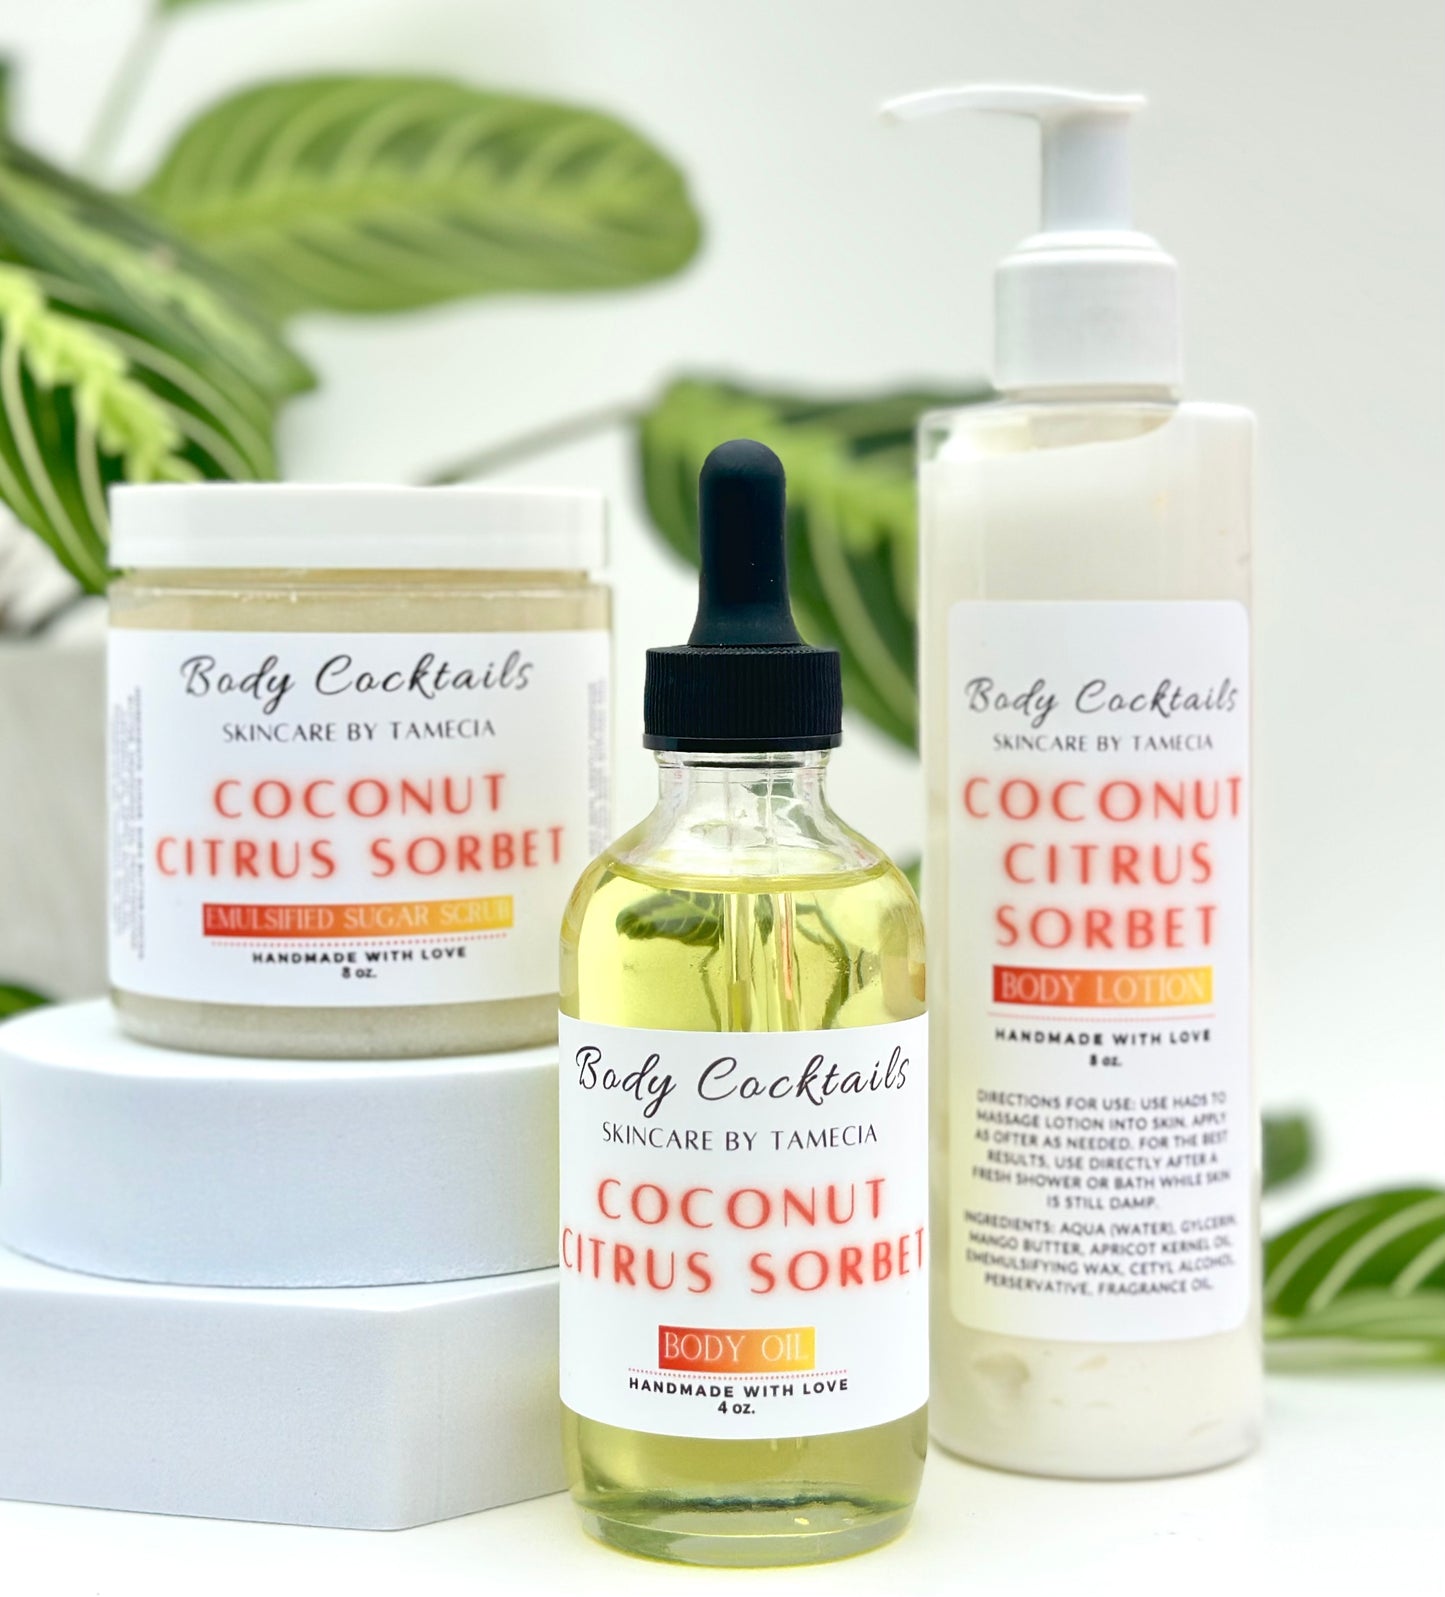 Coconut Citrus Sorbet Body oil